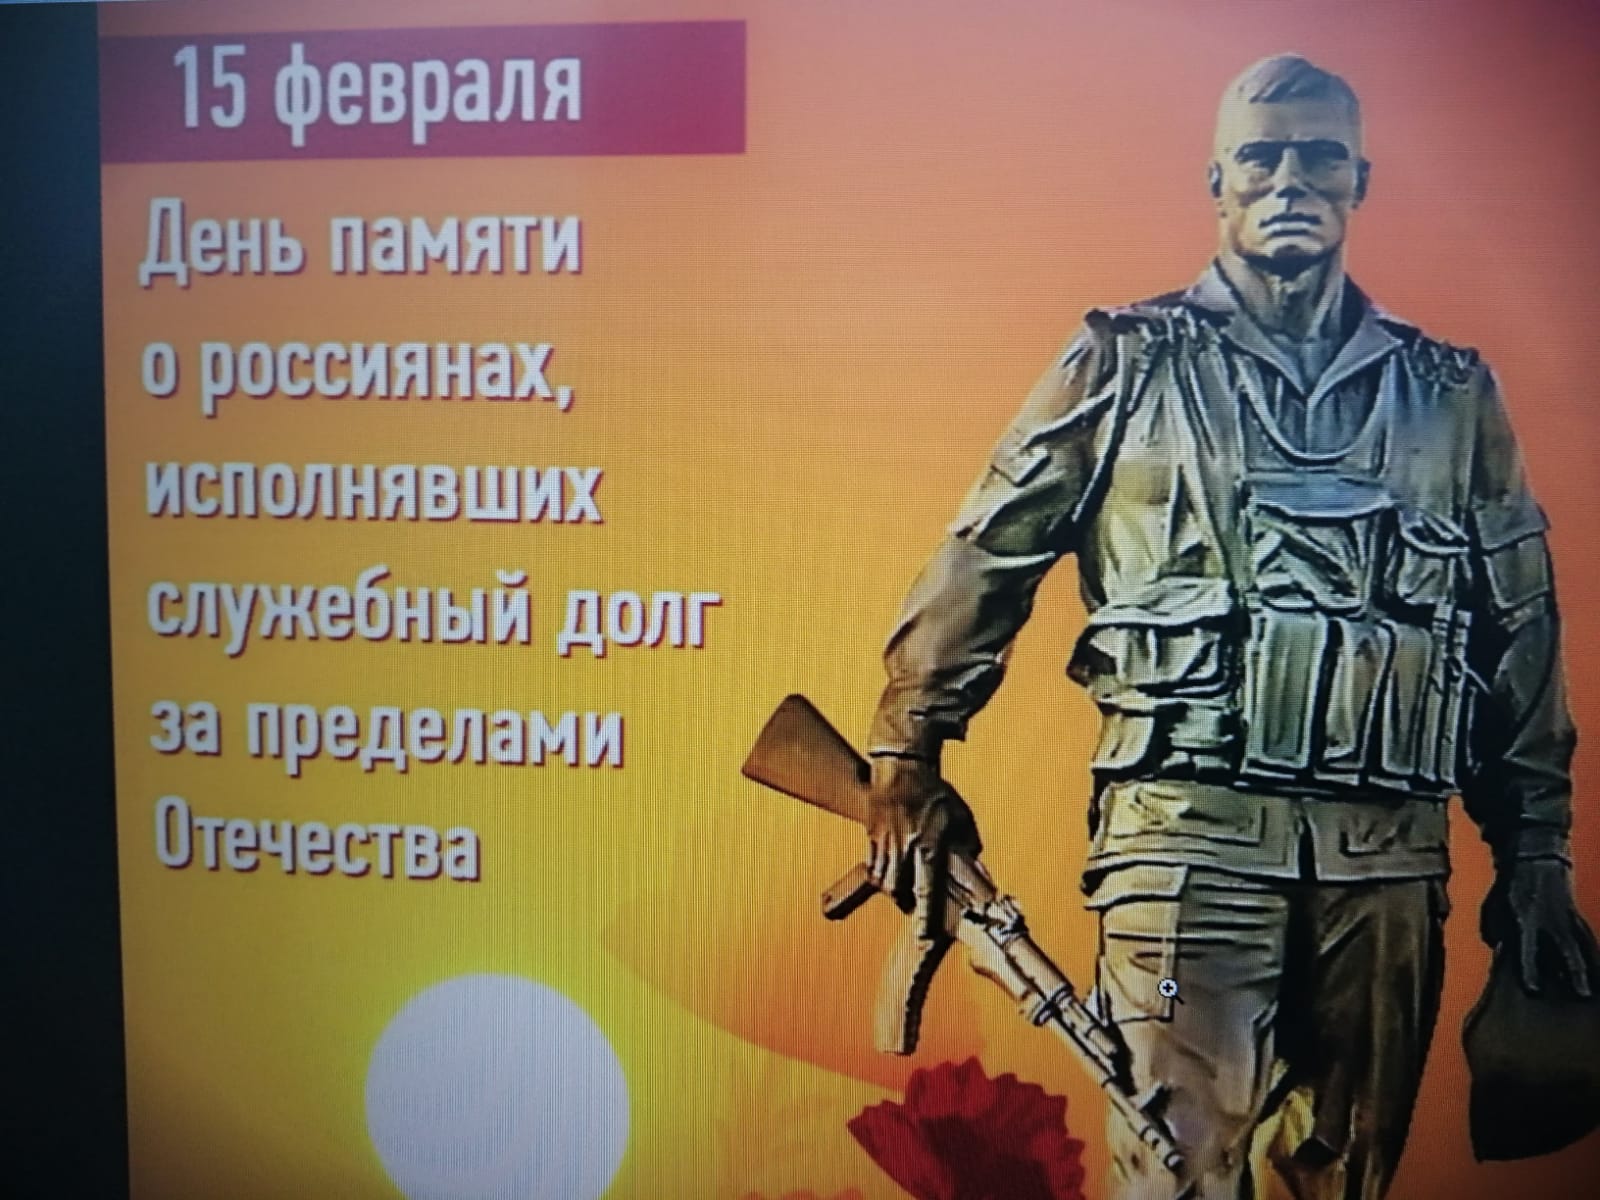 Мероприятия, посвящённые Дню памяти о россиянах, выполнявших свой воинский долг за пределами Отечества.